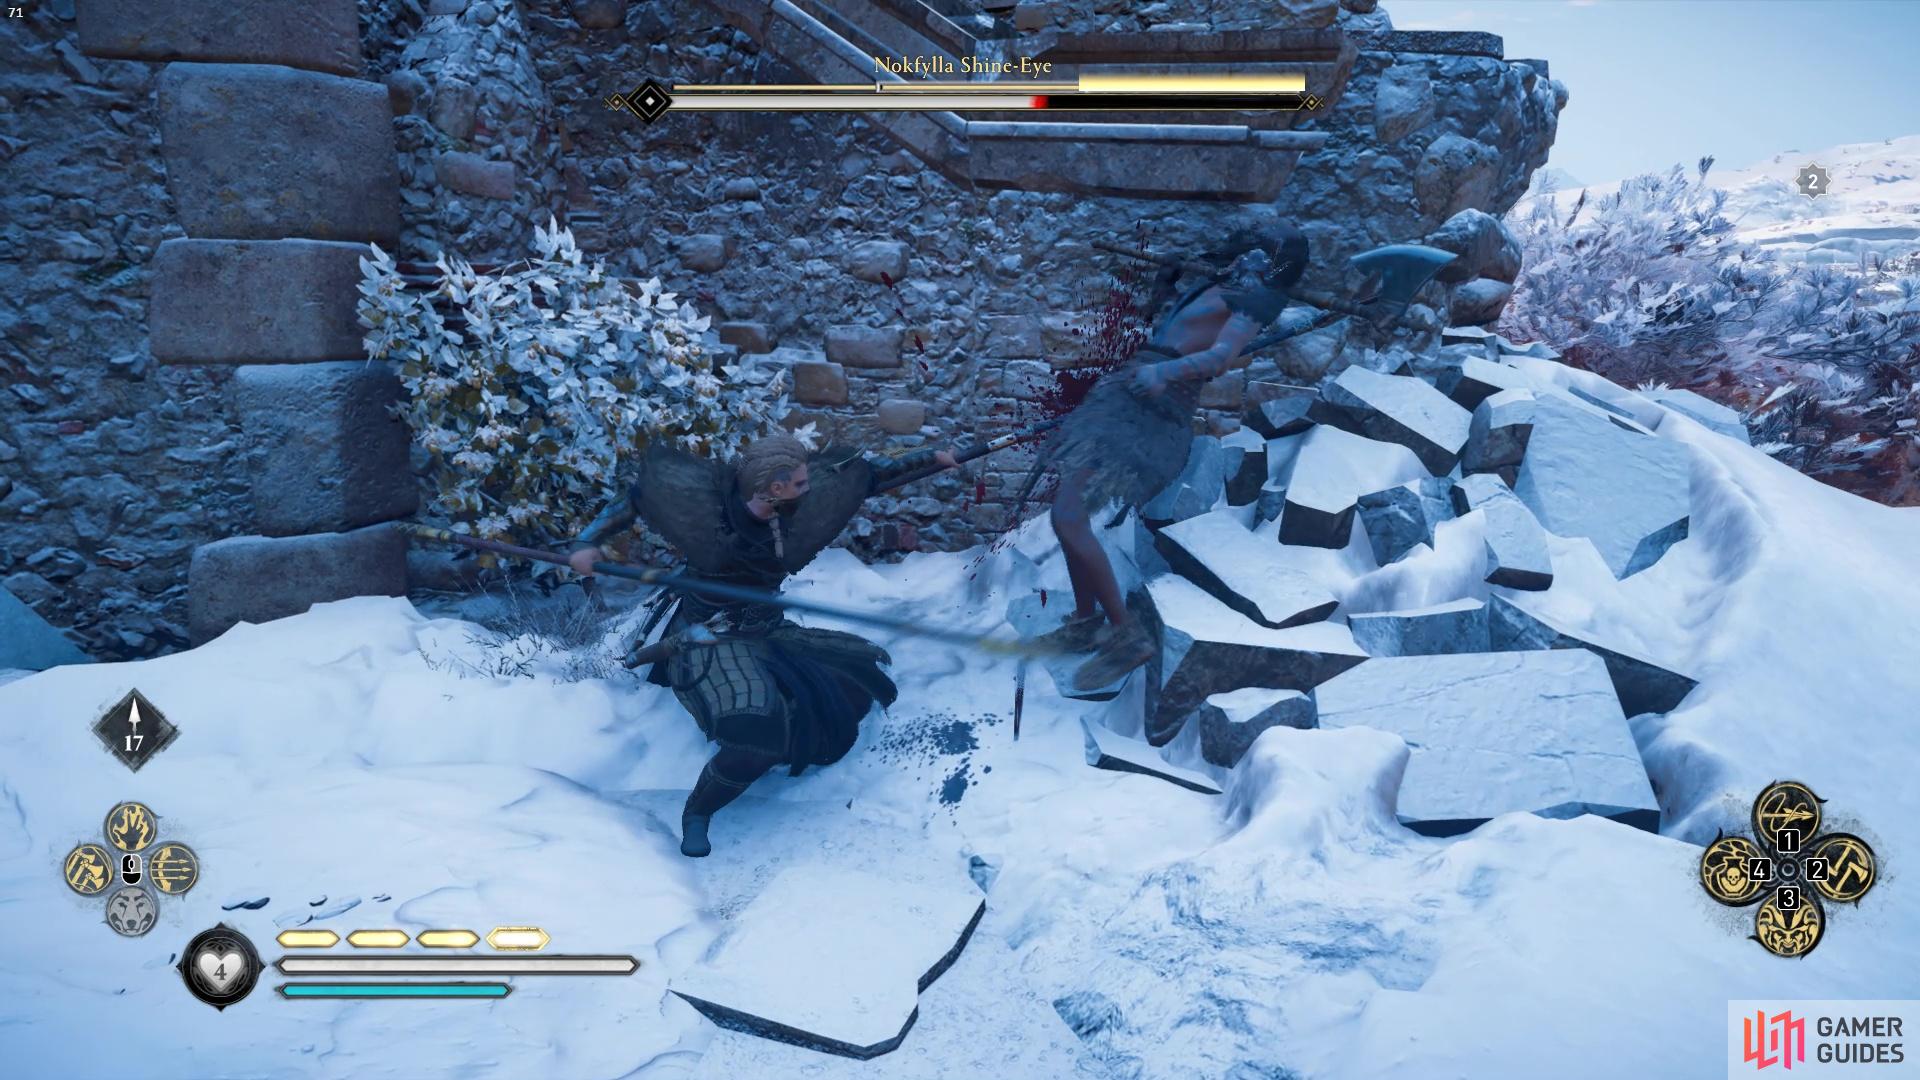 Nokkfylla fights with an axe